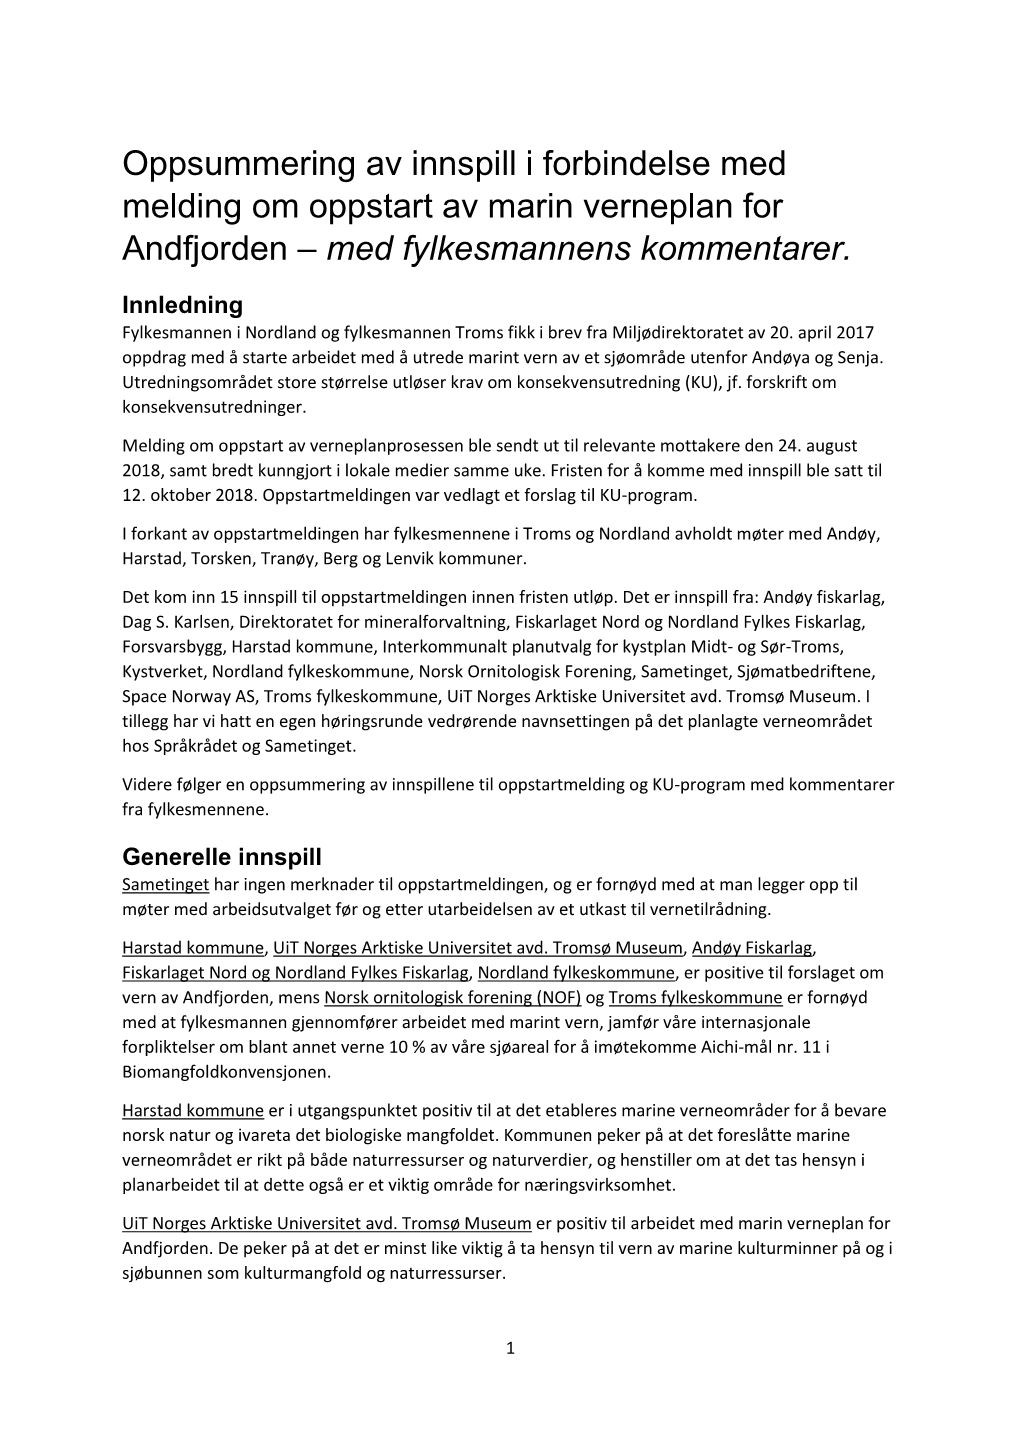 Oppsummering Av Innspill I Forbindelse Med Melding Om Oppstart Av Marin Verneplan for Andfjorden – Med Fylkesmannens Kommentarer